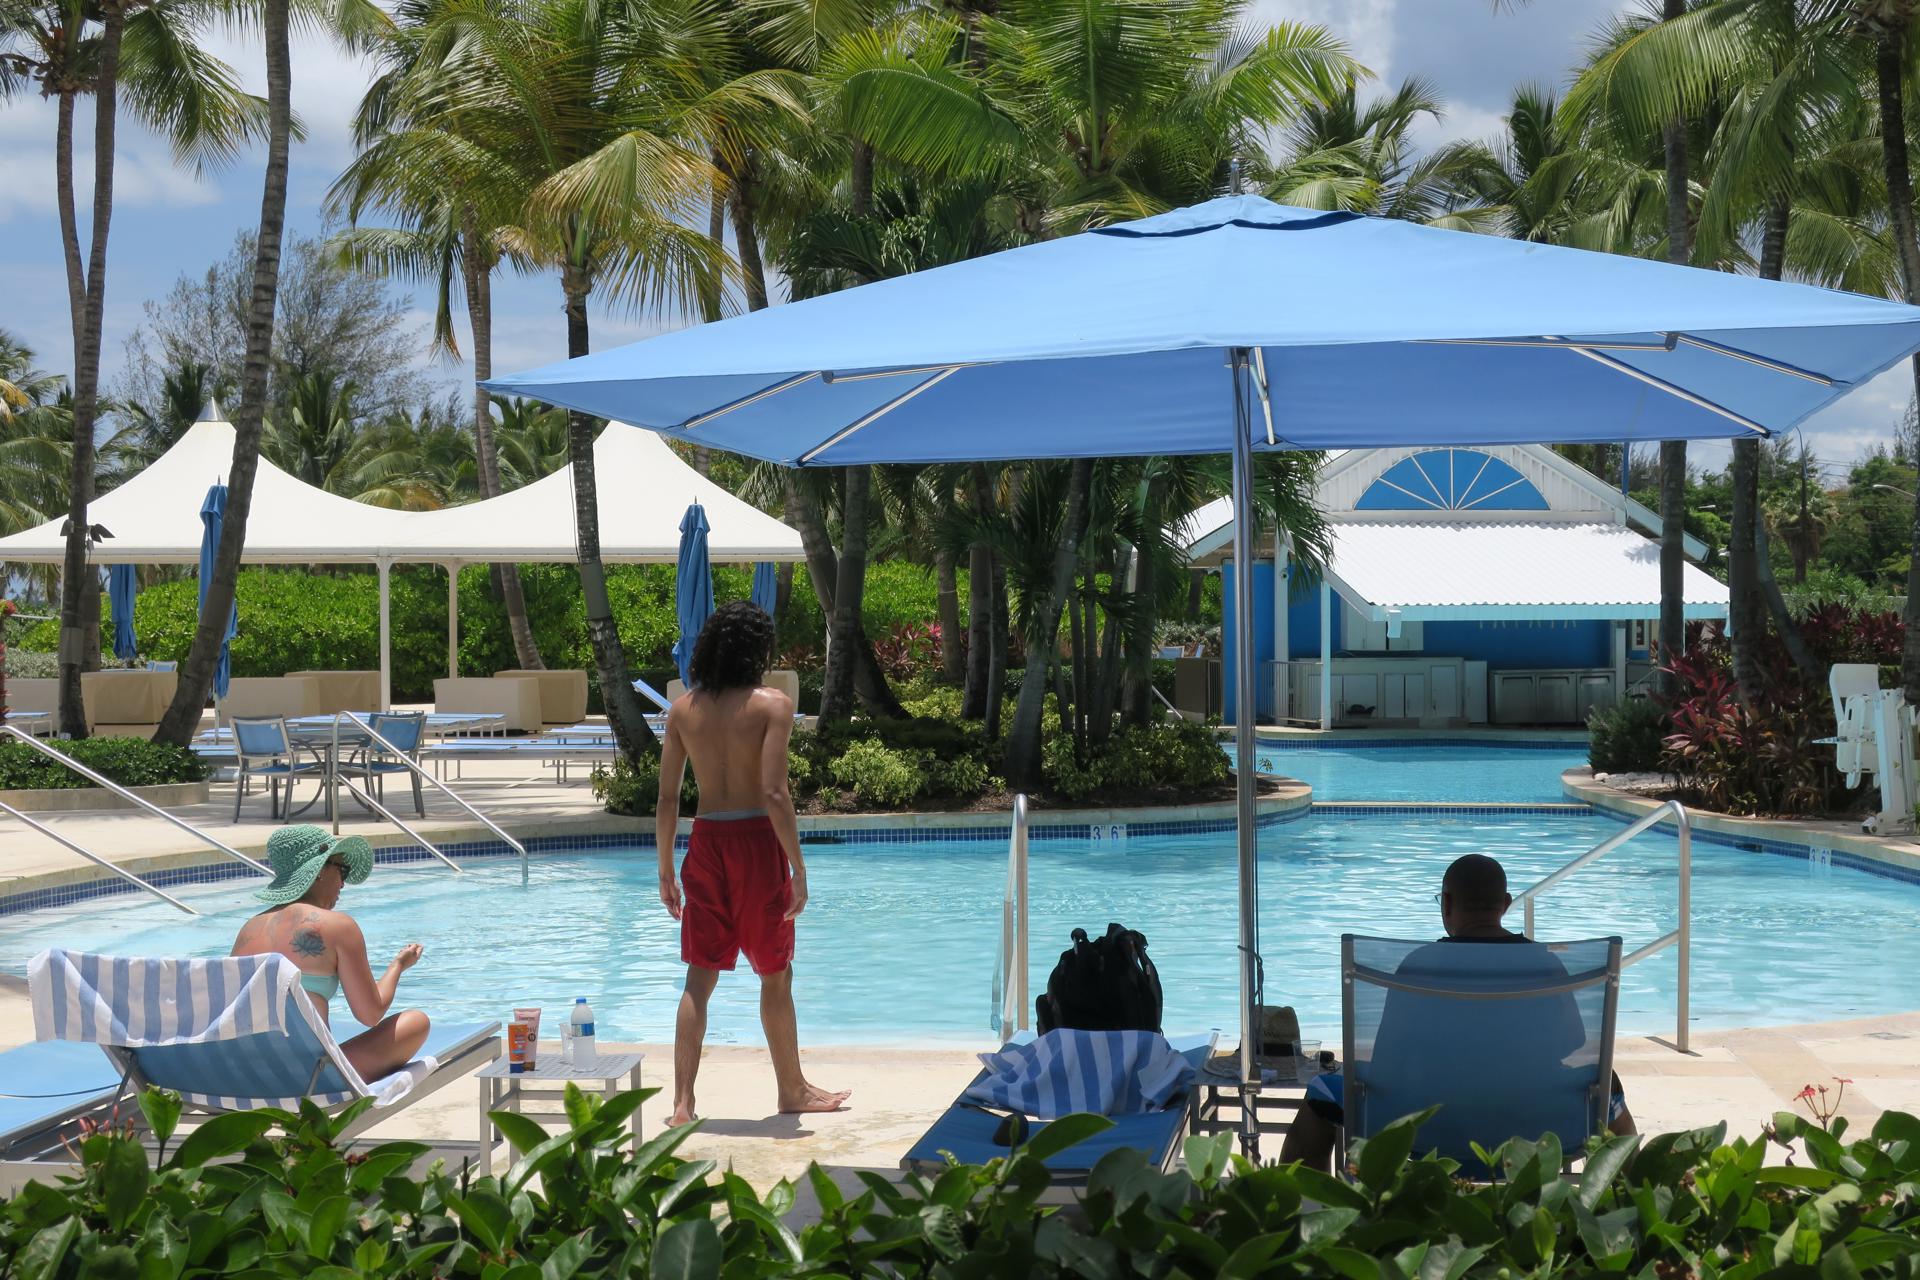 Unas personas disfrutan en una piscina en el hotel Marriott Courtyard en Isla Verde, Puerto Rico. Fotografía de archivo. EFE/Jorge Muñiz